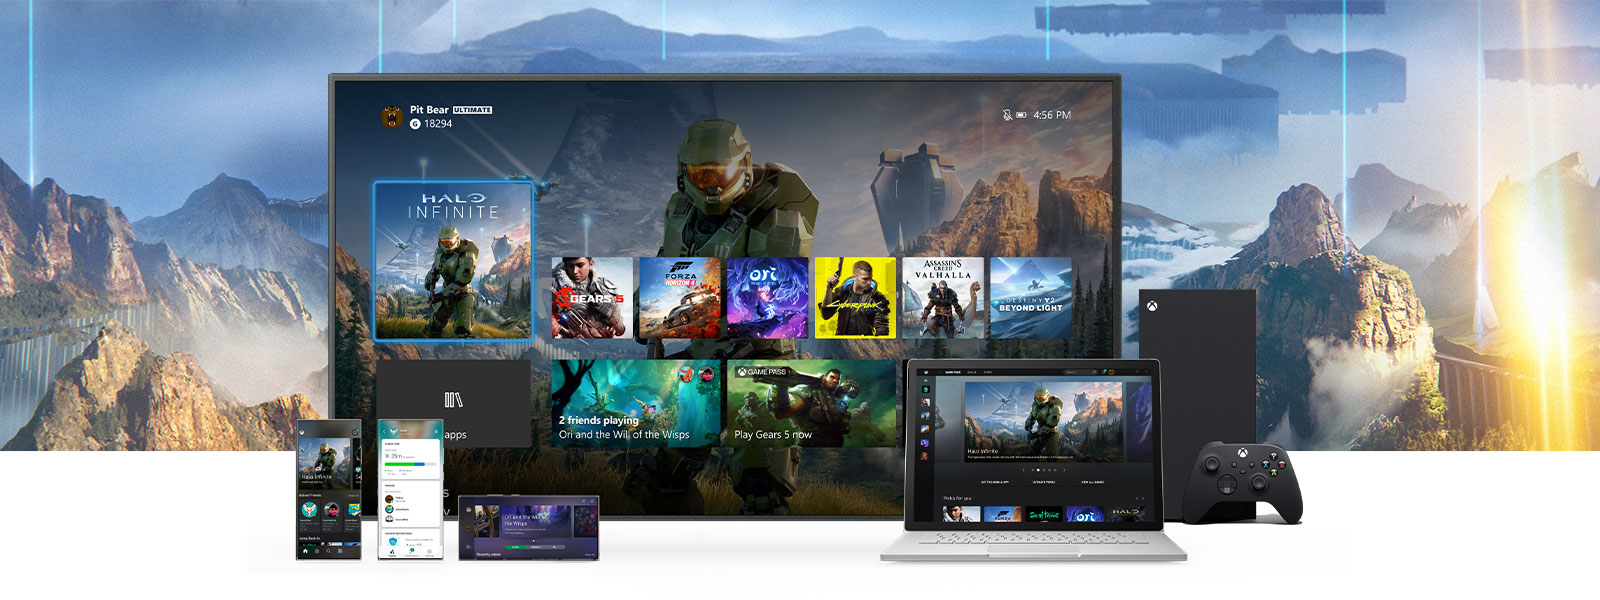 La Interfaz Xbox se muestra en un televisor, junto a una consola Xbox Series X. Otros dispositivos, como una PC y móvil, están delante del televisor.